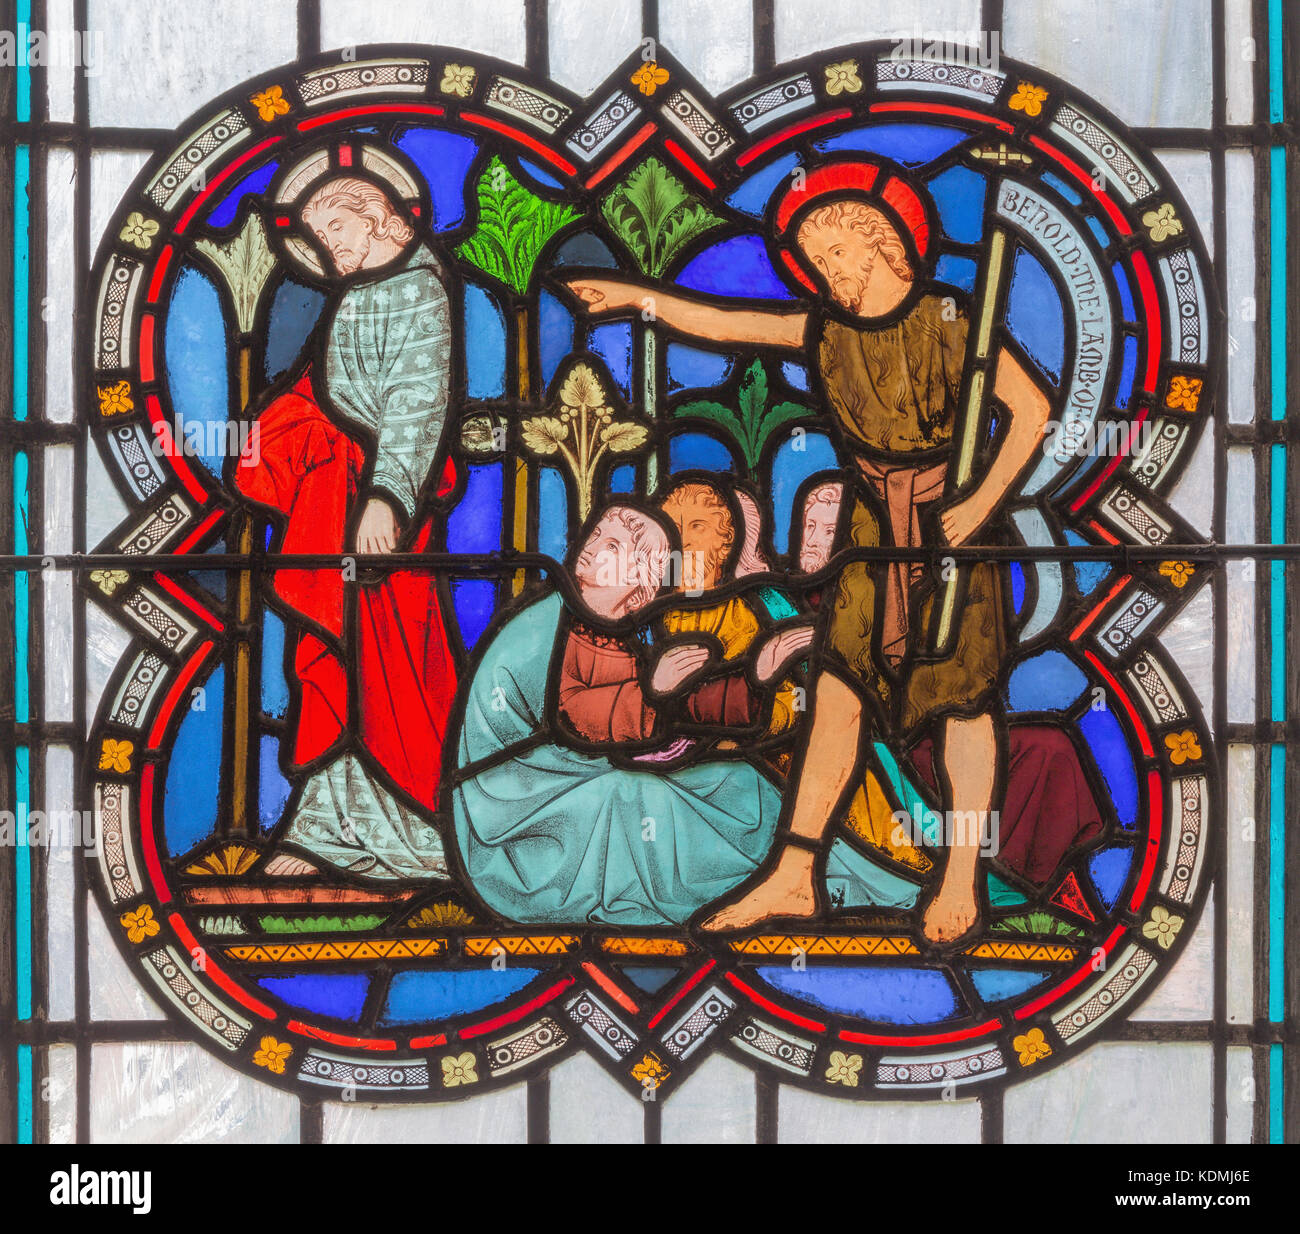 Londra, Gran Bretagna - 14 settembre 2017: "Ecce Agnus Dei" (san Giovanni Battista mostra a Cristo come Redentore) sul vetro macchiato. Foto Stock